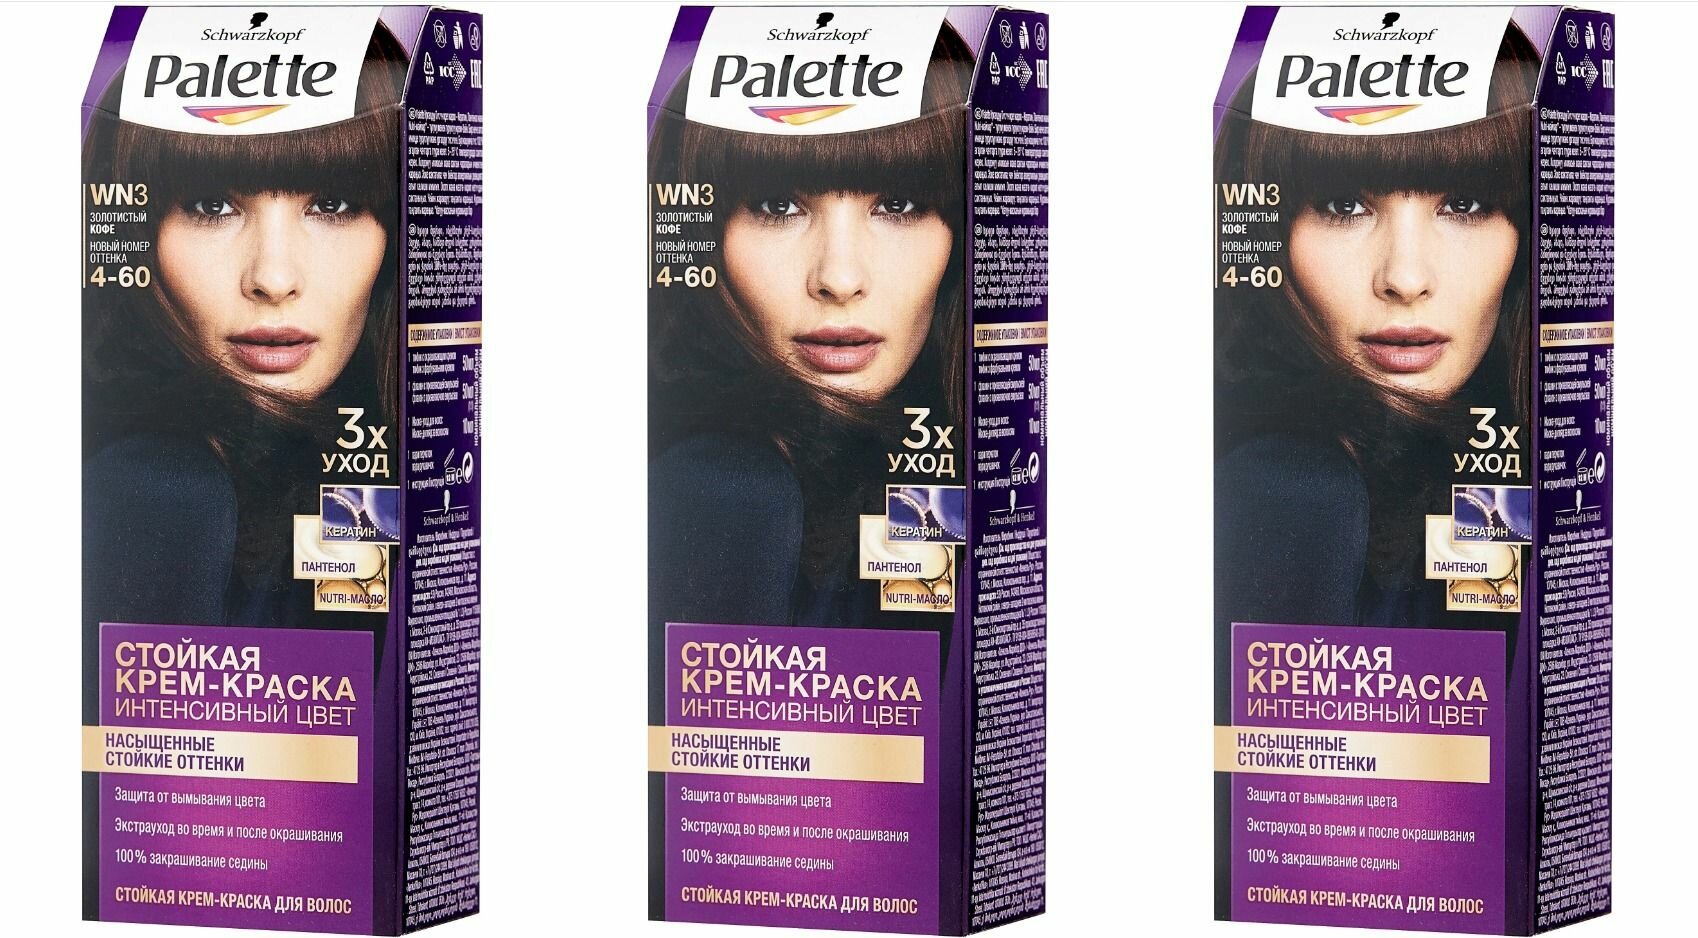 Palette Интенсивный цвет Стойкая крем-краска для волос, WN3 Золотистый кофе, 110мл - 3 штуки